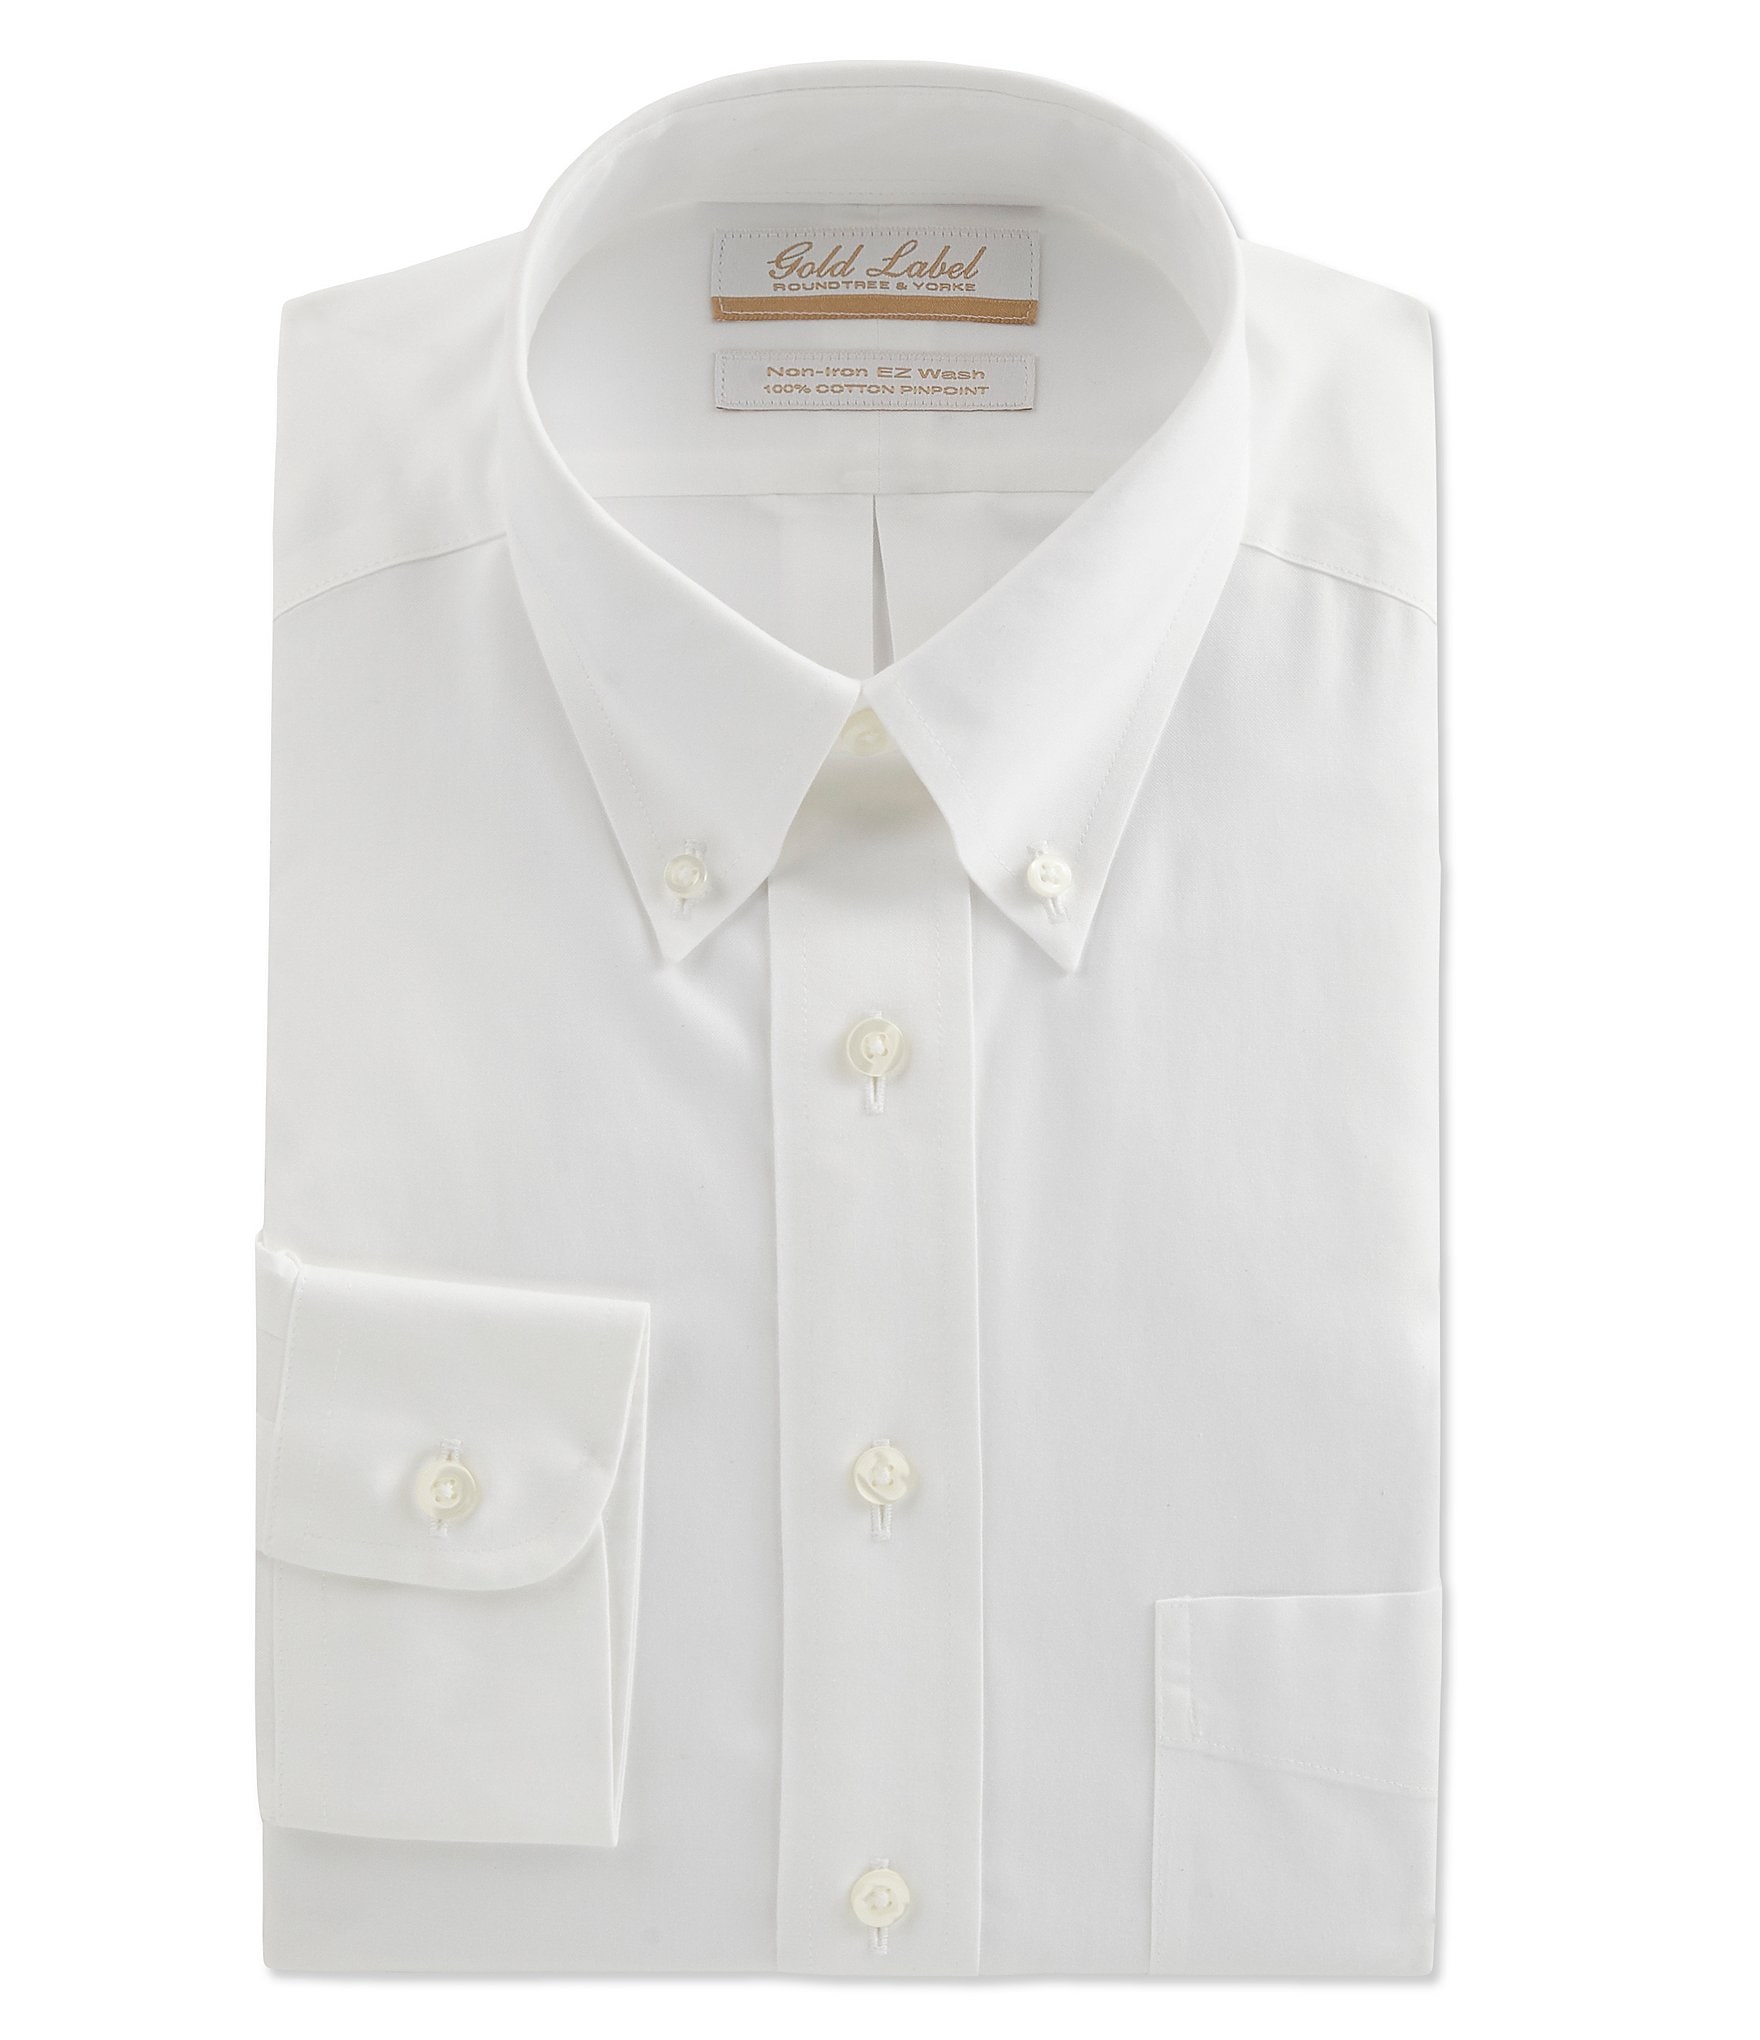 Men Dress Shirt "Roundtree&York" Gold Label Size 17/33 White 100% Cotton NWT Kleding Herenkleding Overhemden & T-shirts Overhemden 